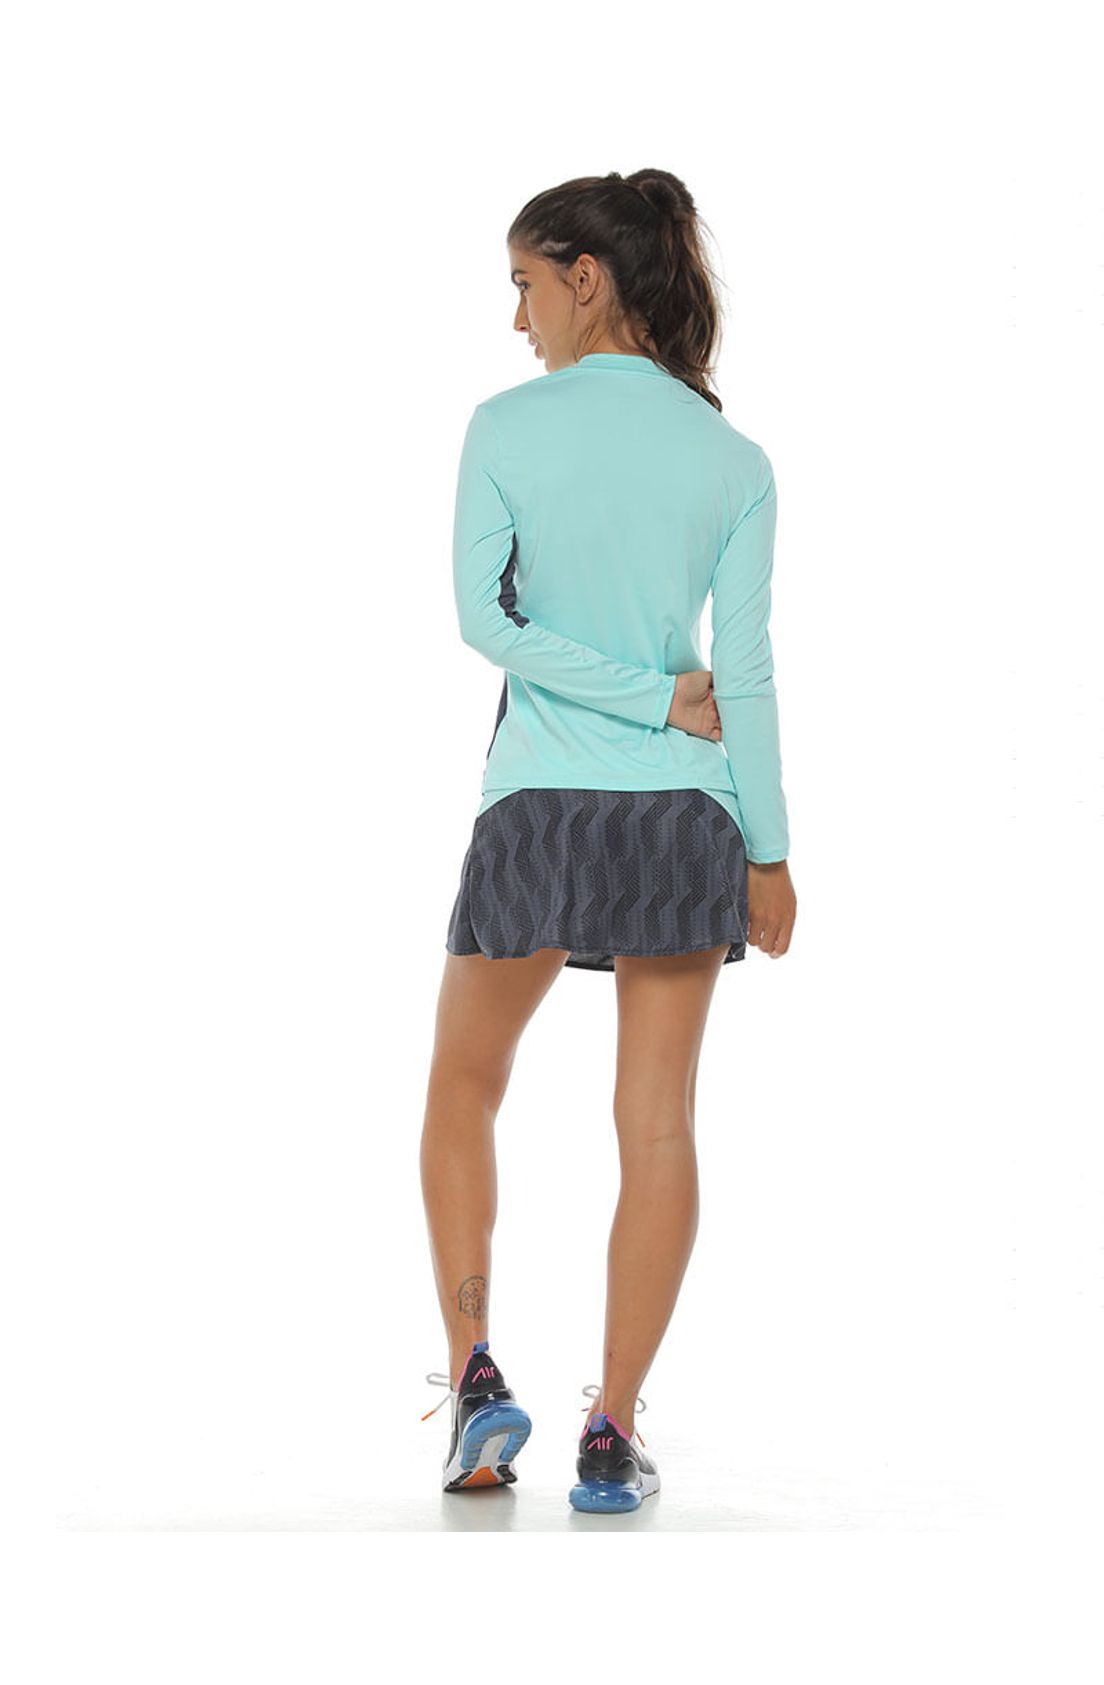 falda short deportiva para mujer